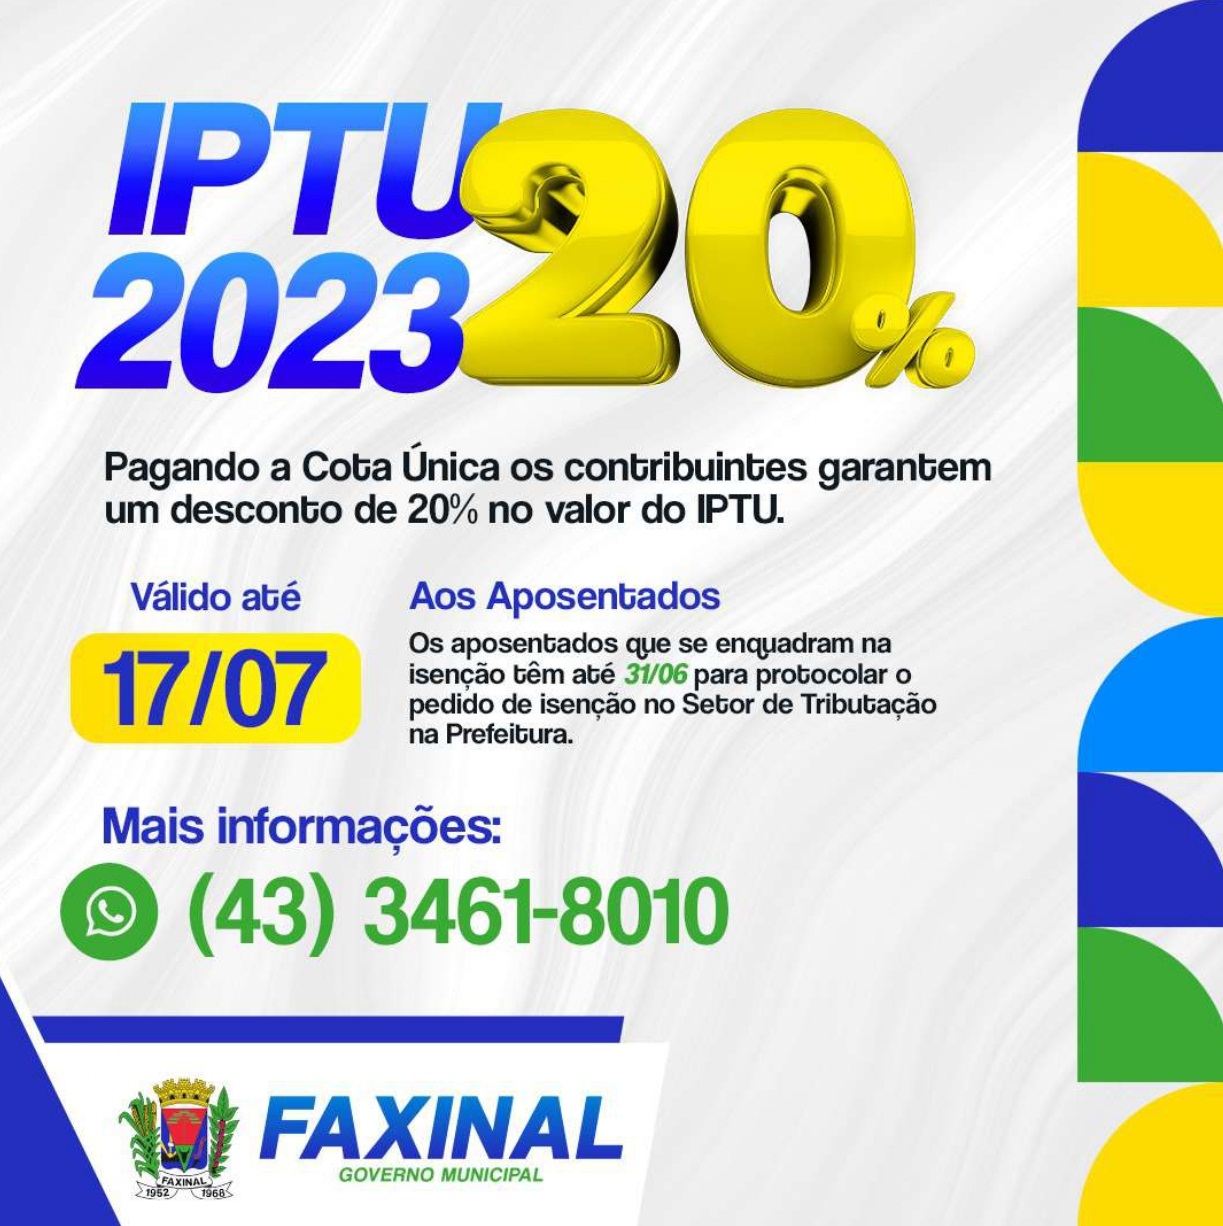 FAXINAL – IPTU 2023